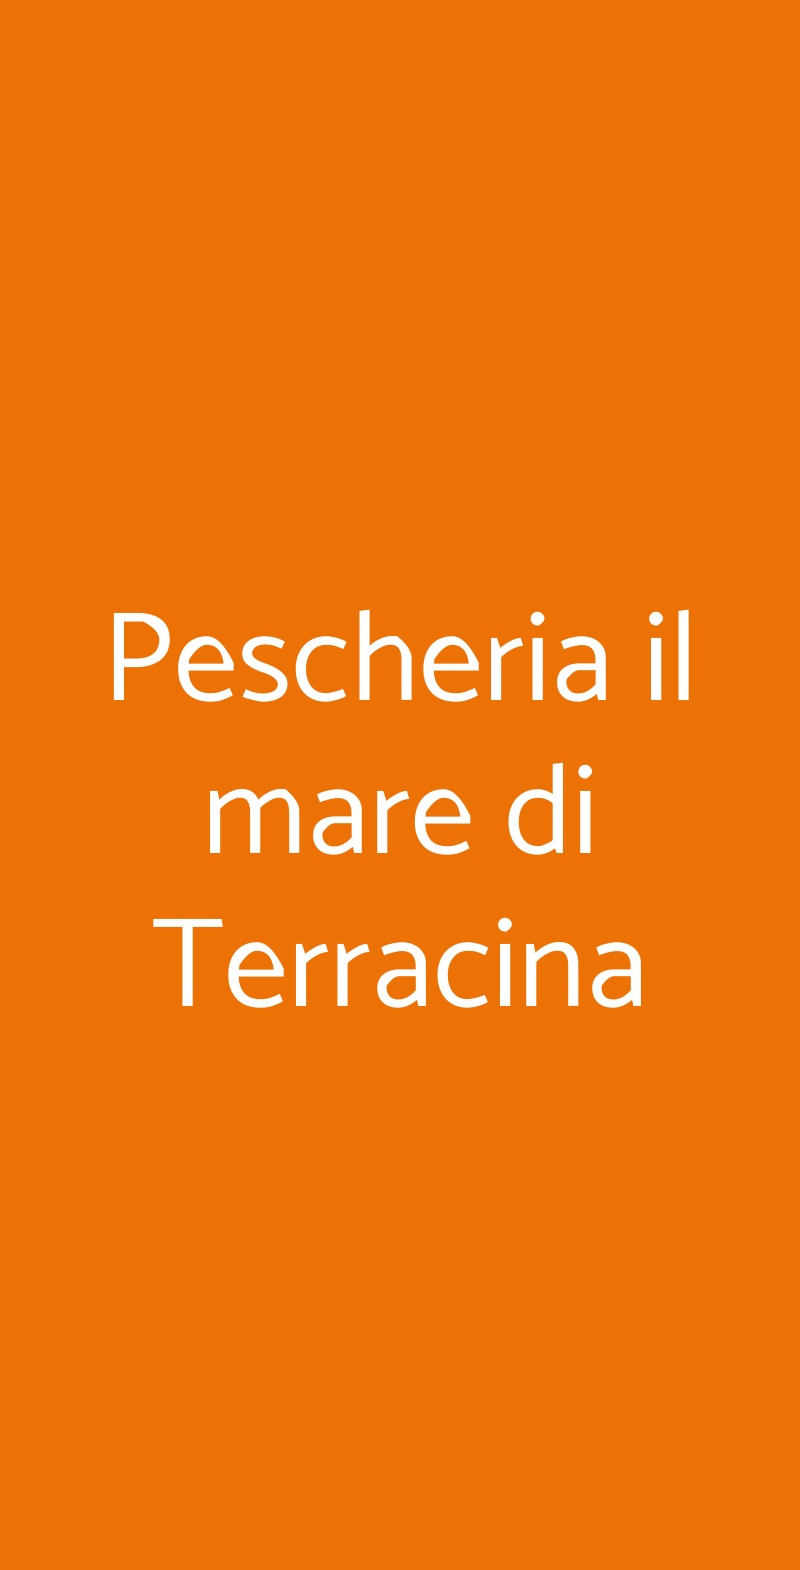 Pescheria il mare di Terracina Roma menù 1 pagina